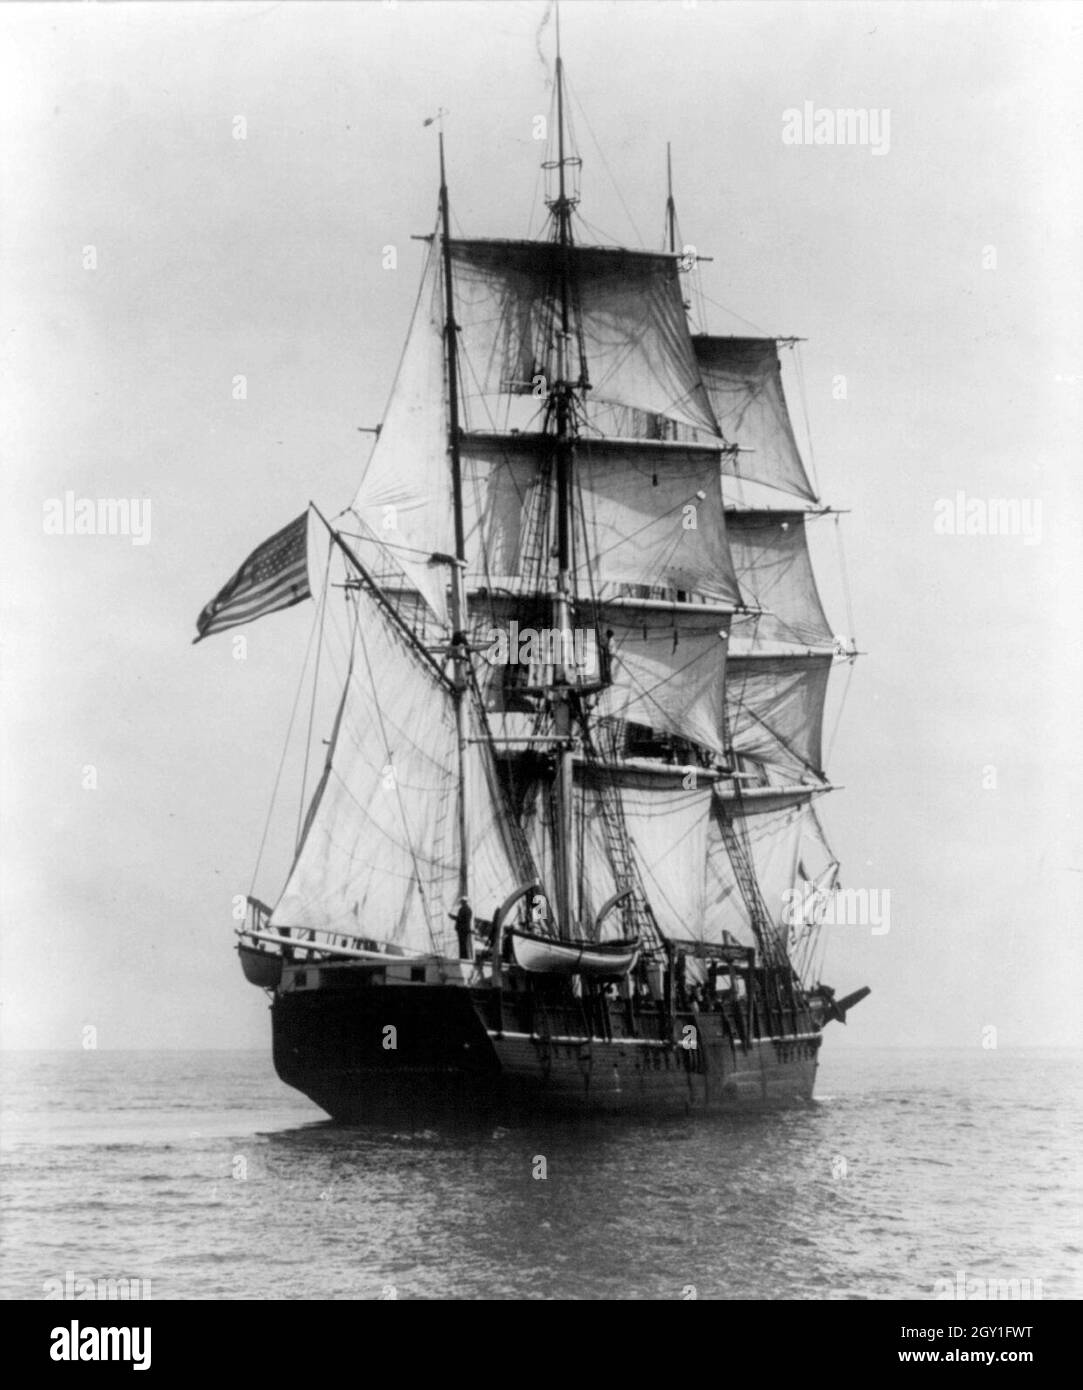 Vintage-Foto um 1927 zeigt den Charles W. Morgan, ein dreimastigen Walfangschiff. Sie wurde 1841 ins Leben gerufen und ist das älteste noch erhaltene Handelsschiff der Welt und das einzige noch erhaltene Walfangschiff aus der amerikanischen Handelsflotte des 19. Jahrhunderts Stockfoto